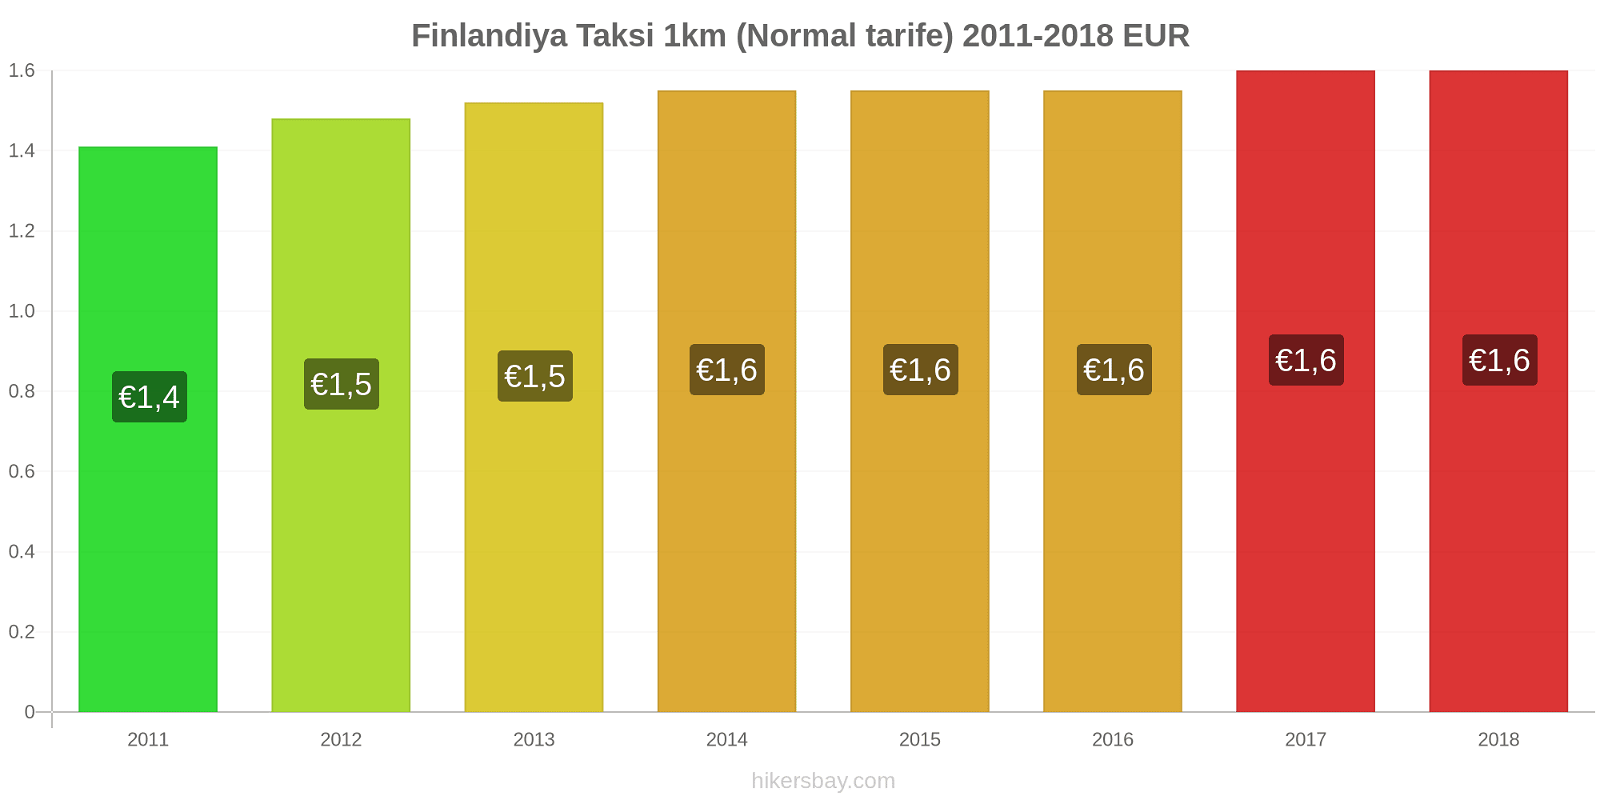 Finlandiya fiyat değişiklikleri Taksi 1km (Normal tarife) hikersbay.com